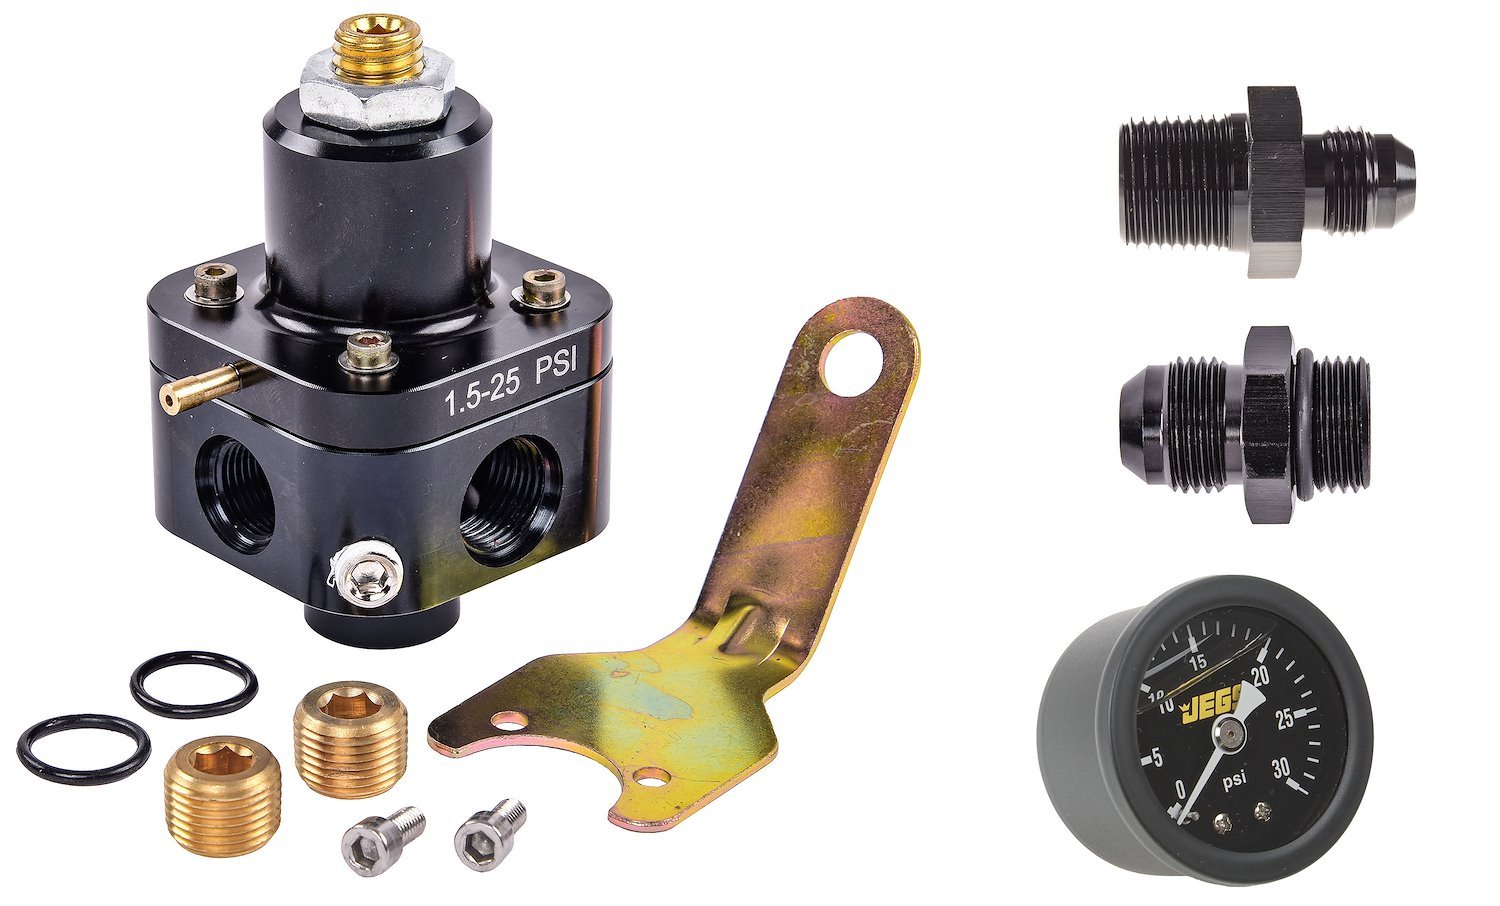 Fuel Pressure Regulator Kit for Carbureted Engines [1.5-25